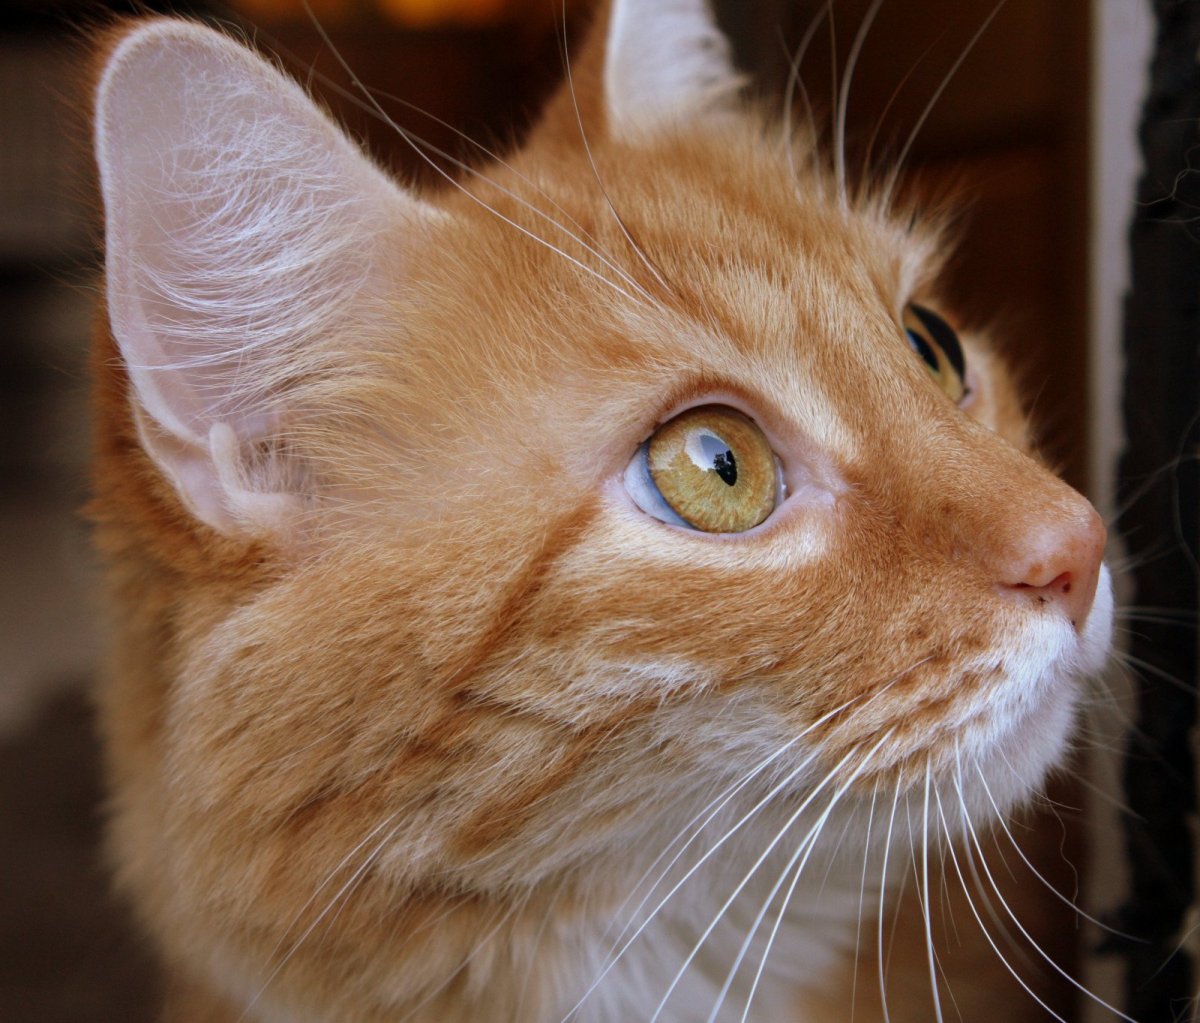 Рыжие породы кошек с фотографиями. Охос азулес кошка рыжий. Европейский короткошерстный кот рыжий. Европейская короткошерстная табби рыжий. Европейская короткошерстная кошка рыжая.